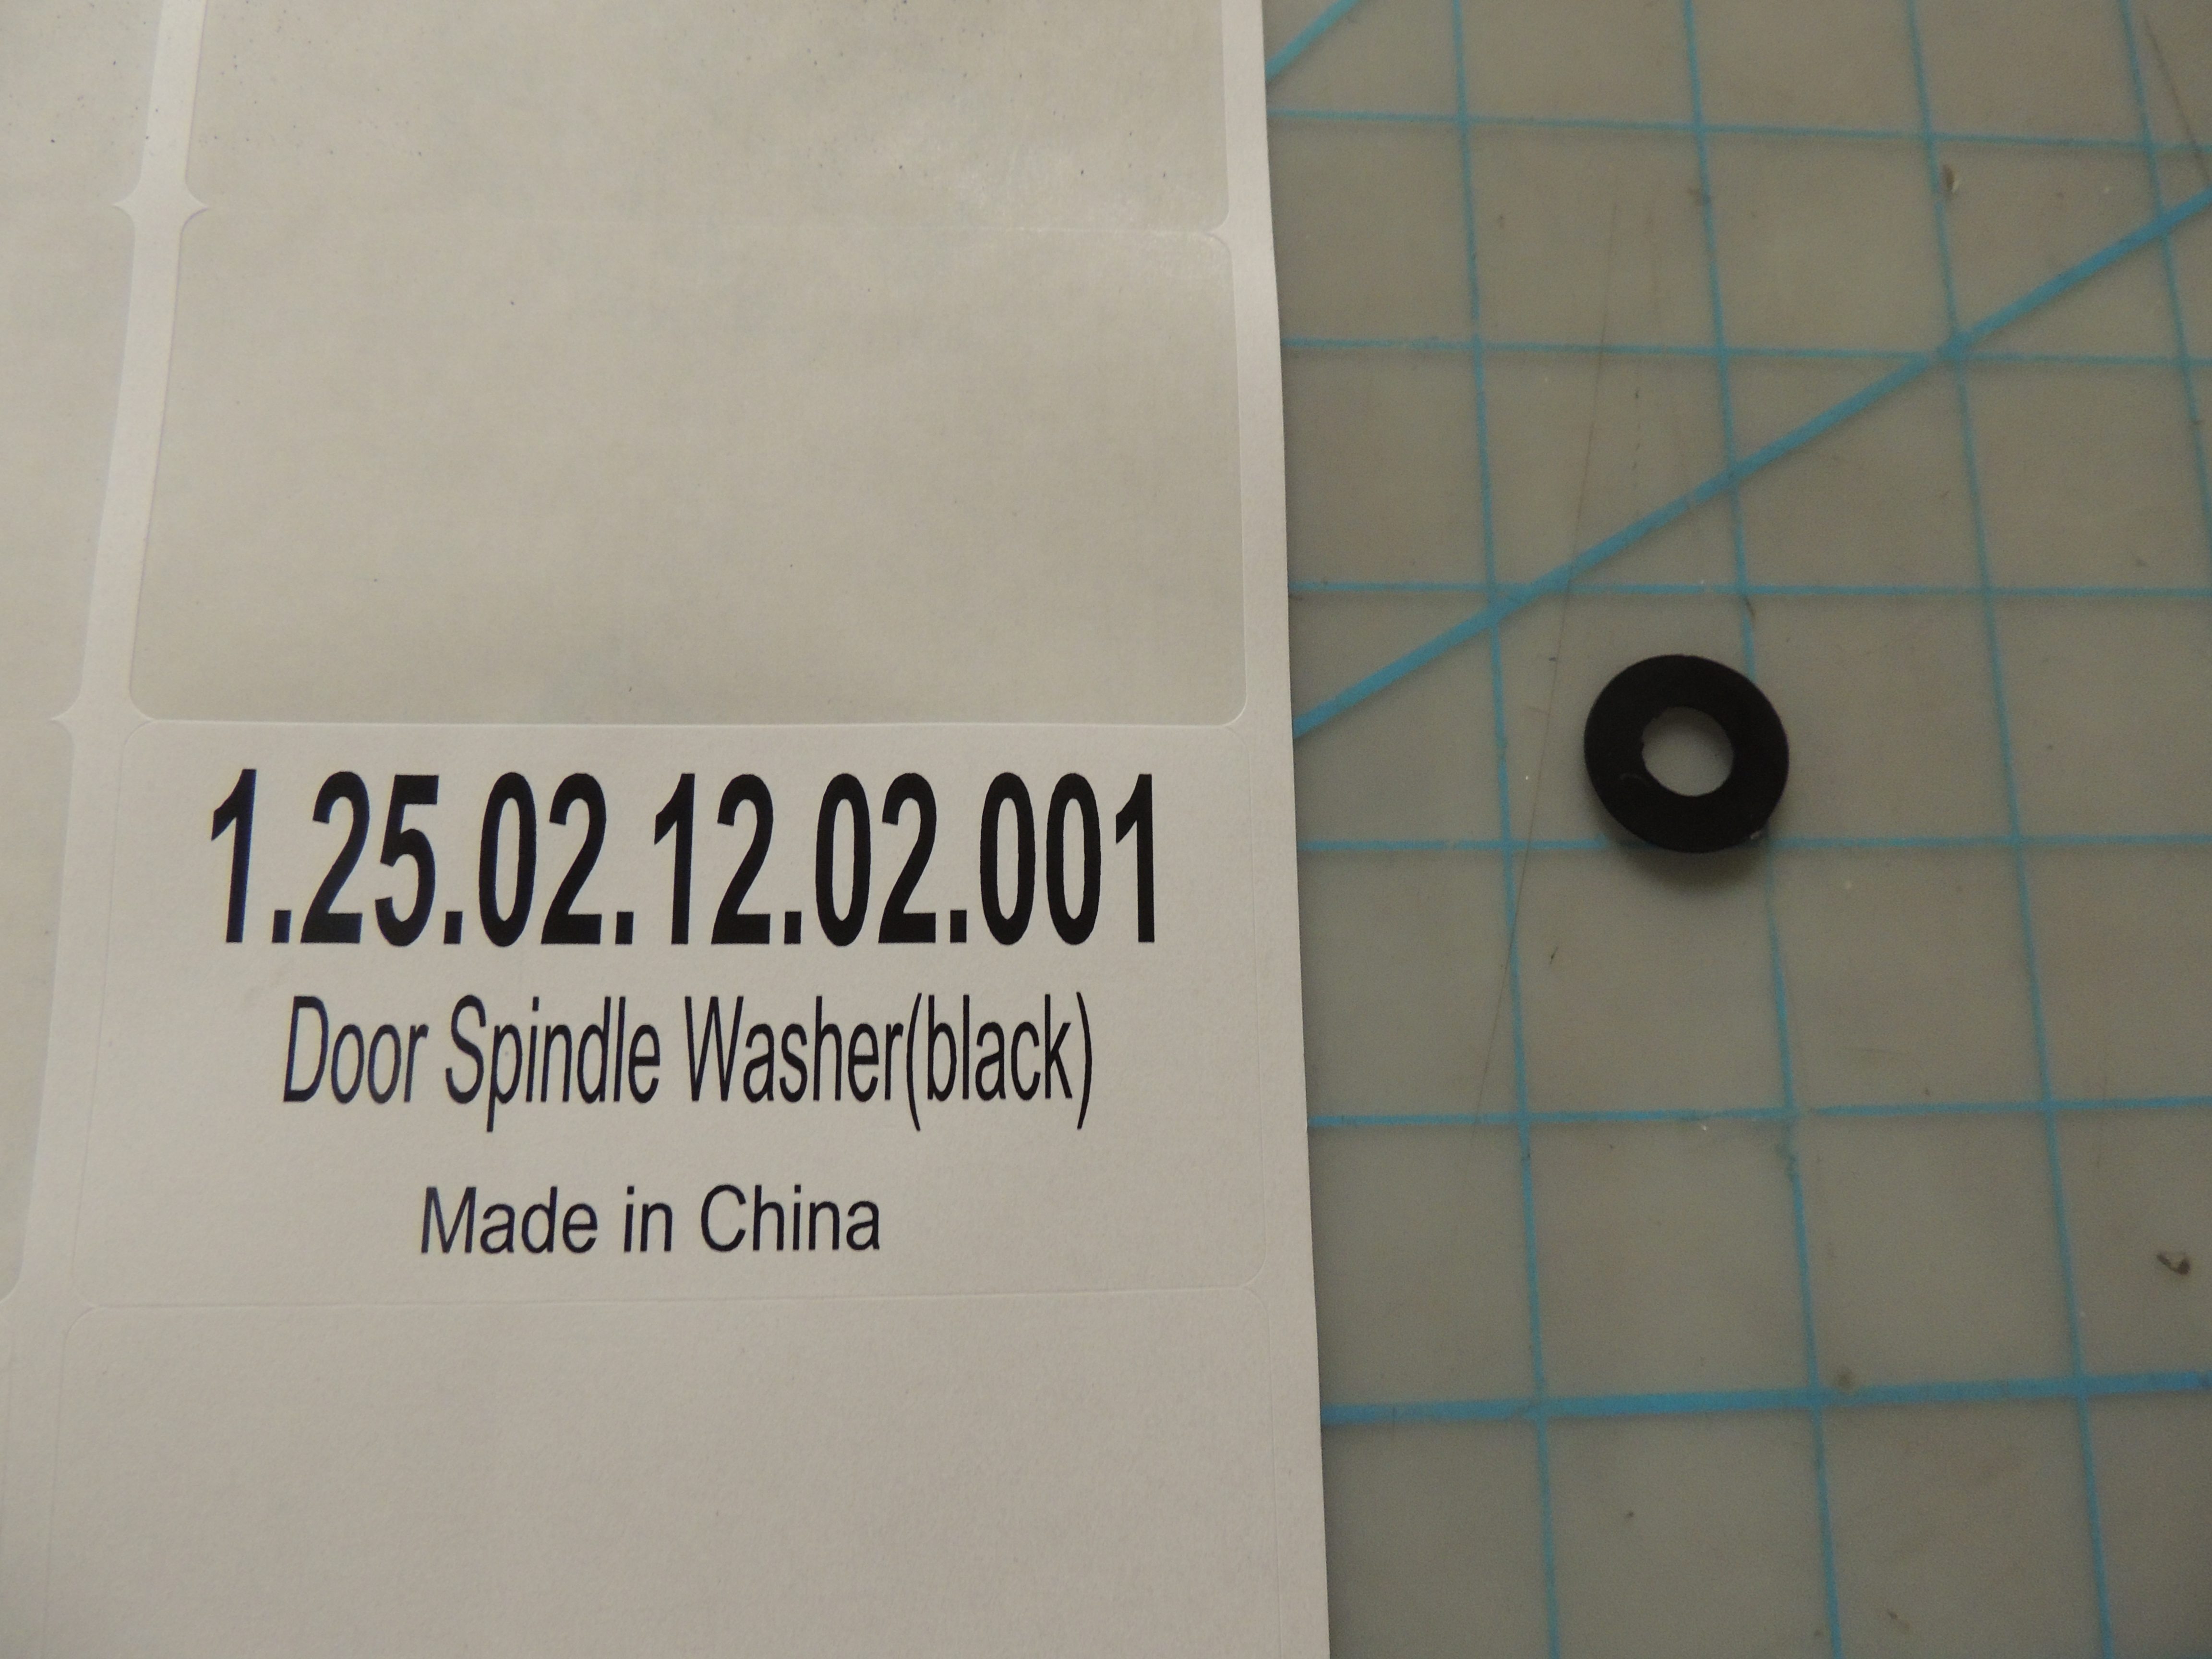 Door Spindle Washer(black)